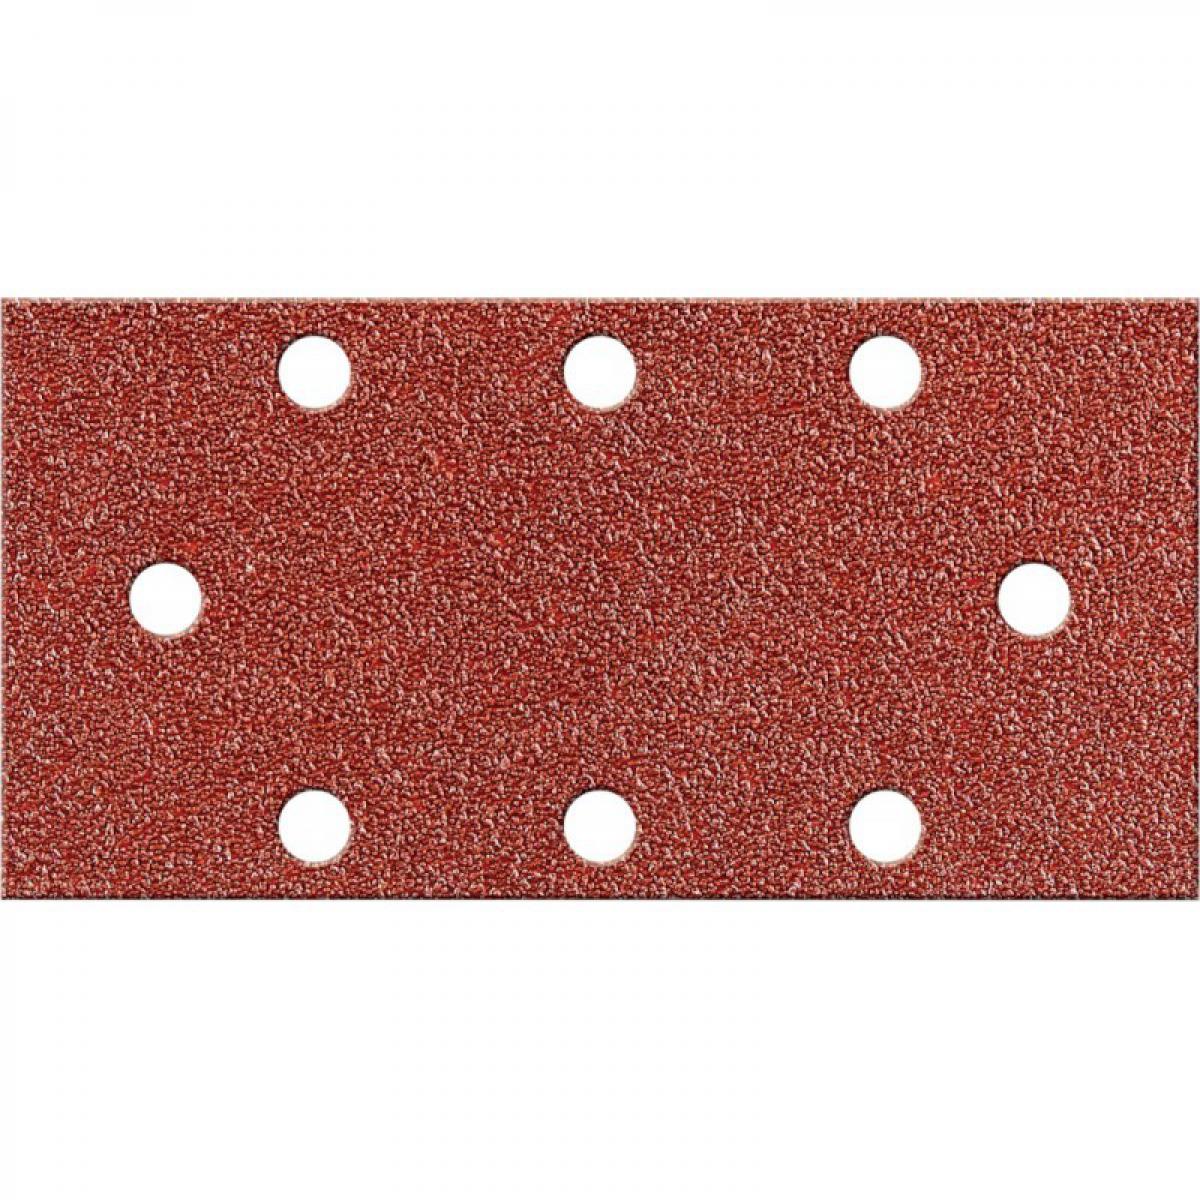 Fortis - Papier abrasif Velcro rectangulaire Kor.93x178mm, K 80,8L. FORTIS - Abrasifs et brosses